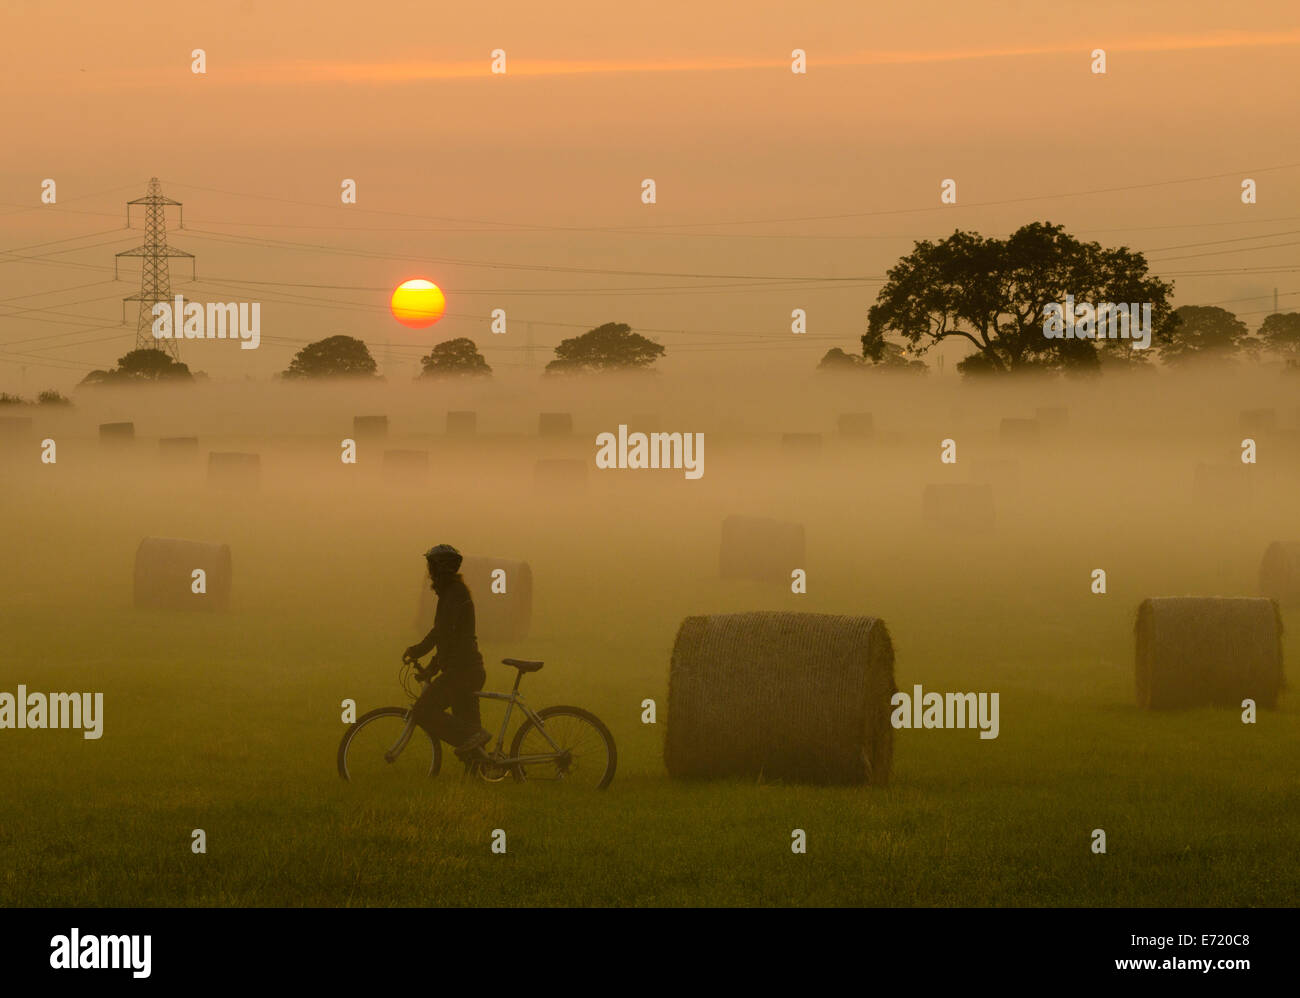 Female mountain biker on misty morning at sunrise. UK Stock Photo